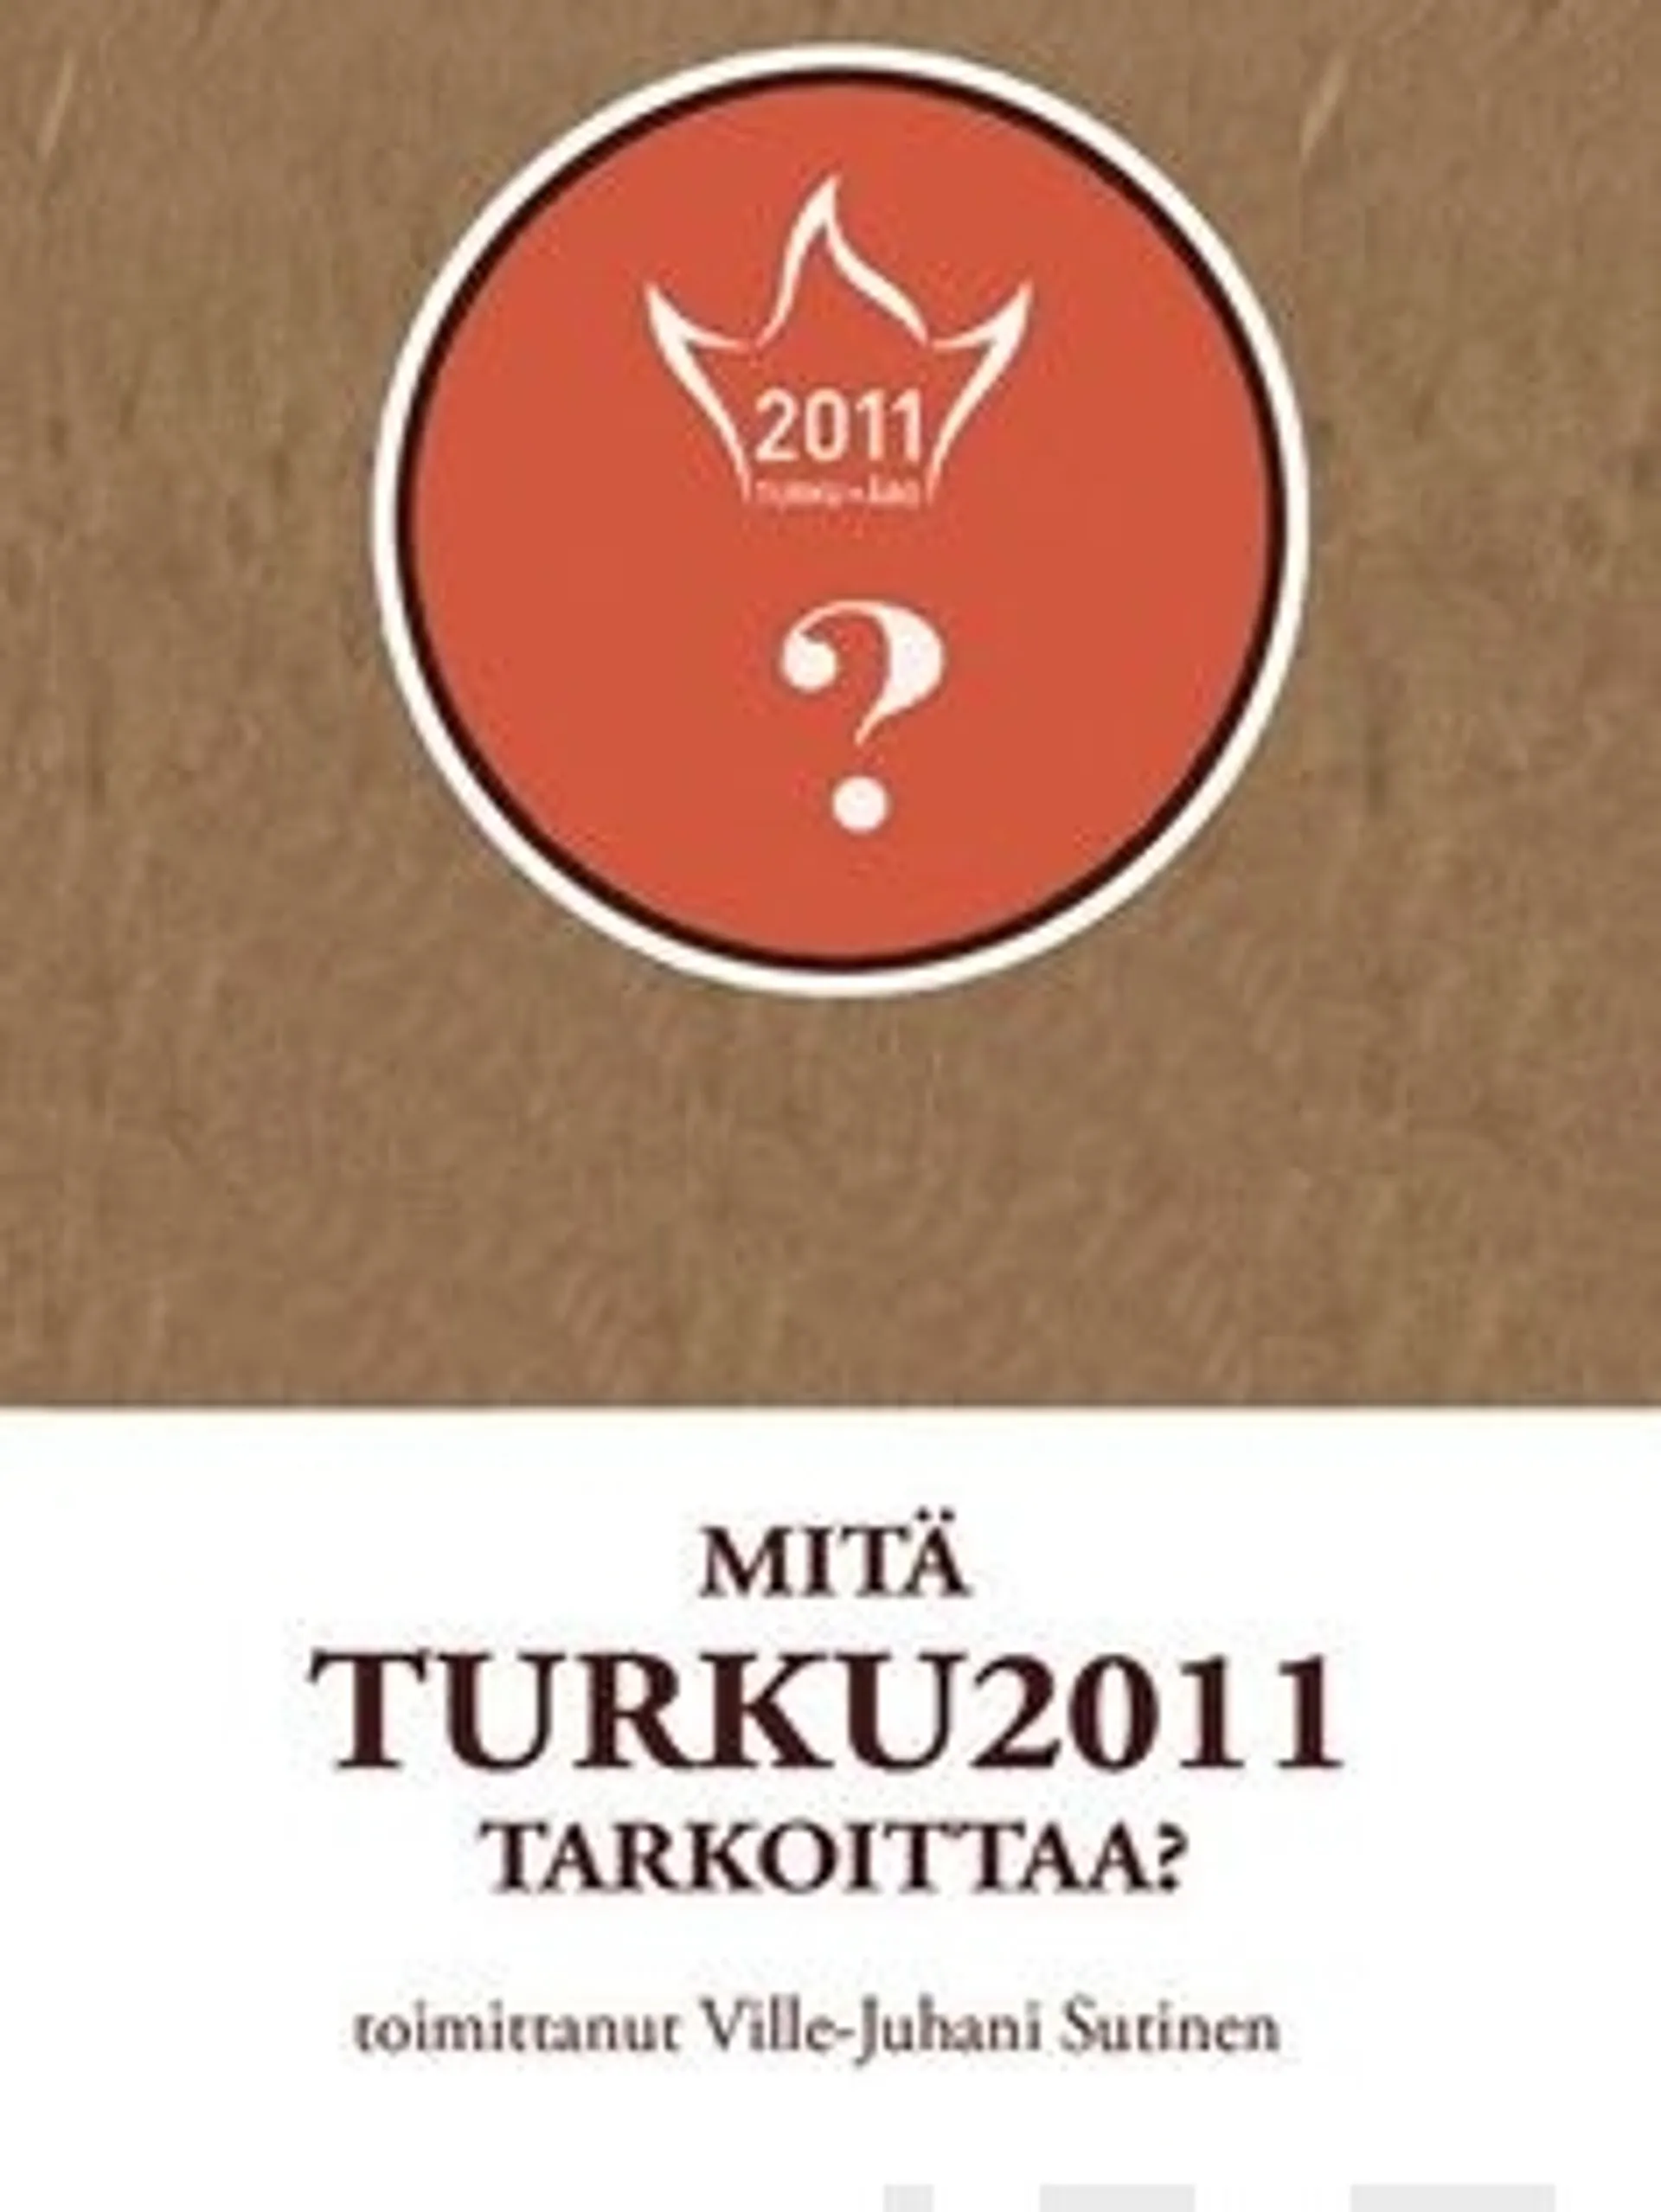 Mitä Turku 2011 tarkoittaa?